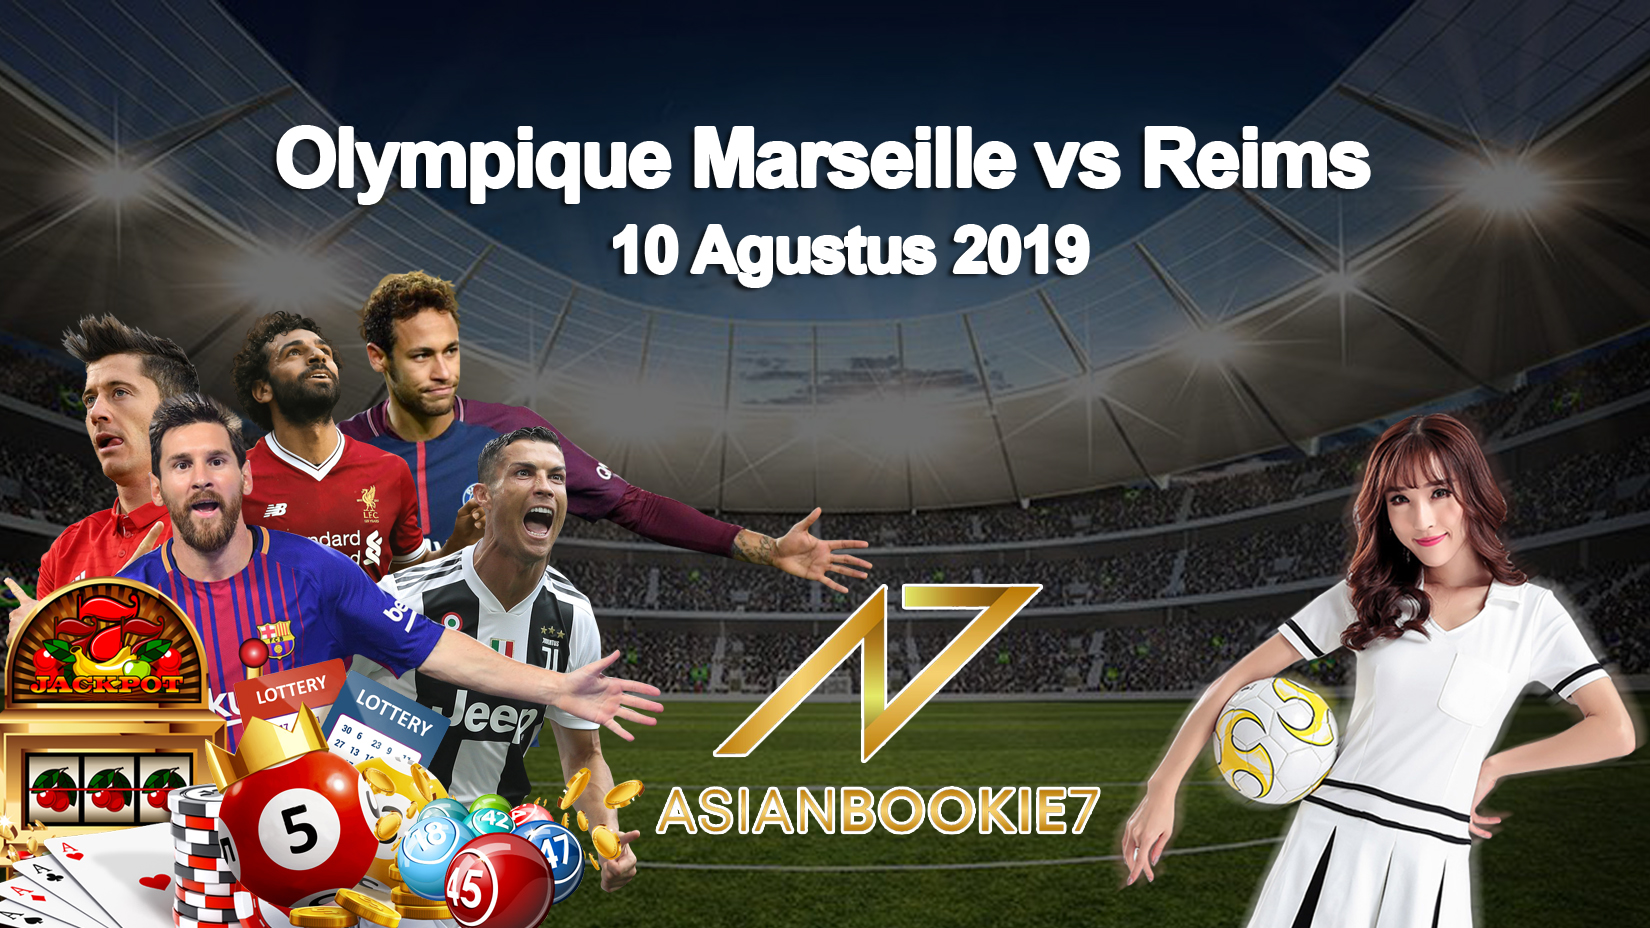 Prediksi Olympique Marseille vs Reims 10 Agustus 2019